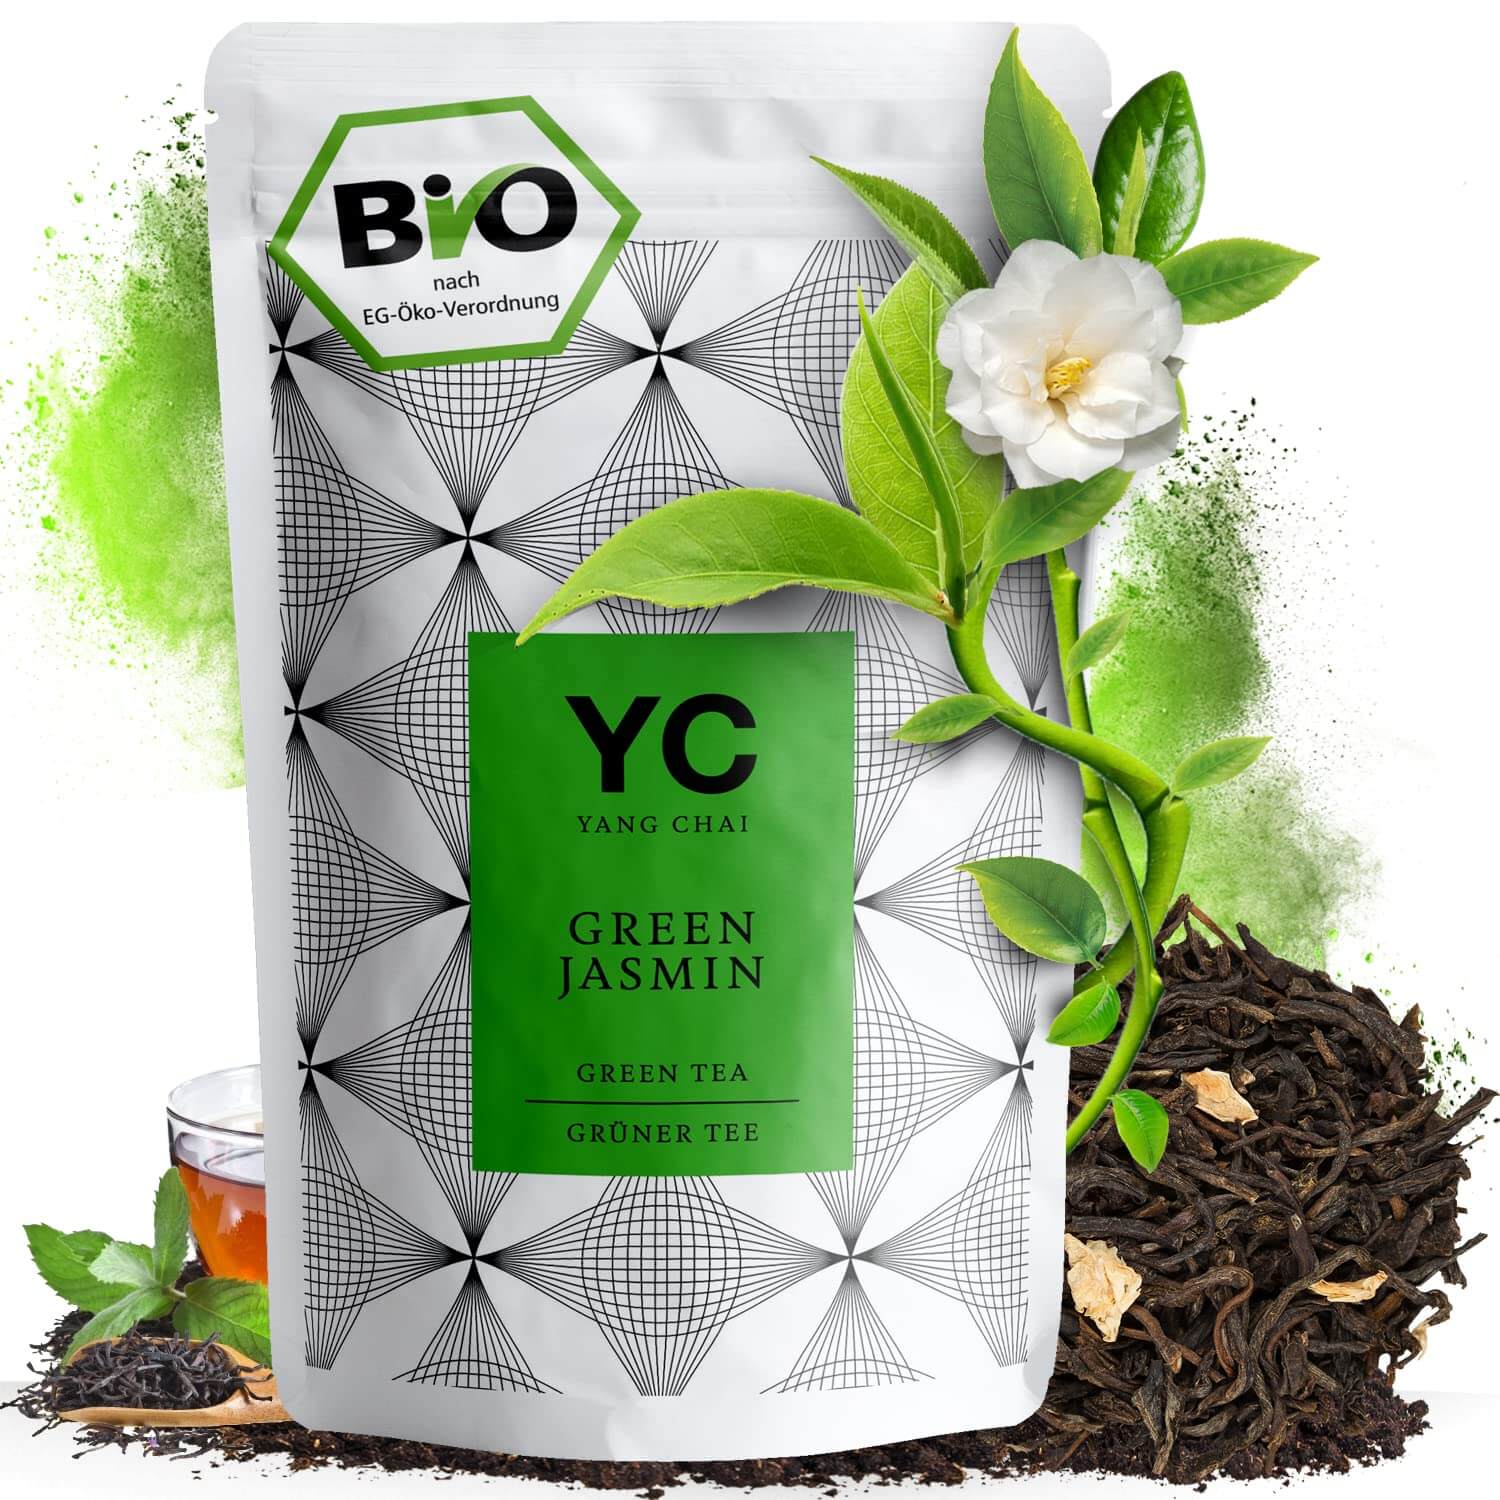 BIO Jasmin Tee  - Grüner Tee China - Lose Blätter Chinesische Jasmintee - Yasmin Tee Grün Jasmin Chinesischer Grüntee "Green Jasmin" von Yang Chai